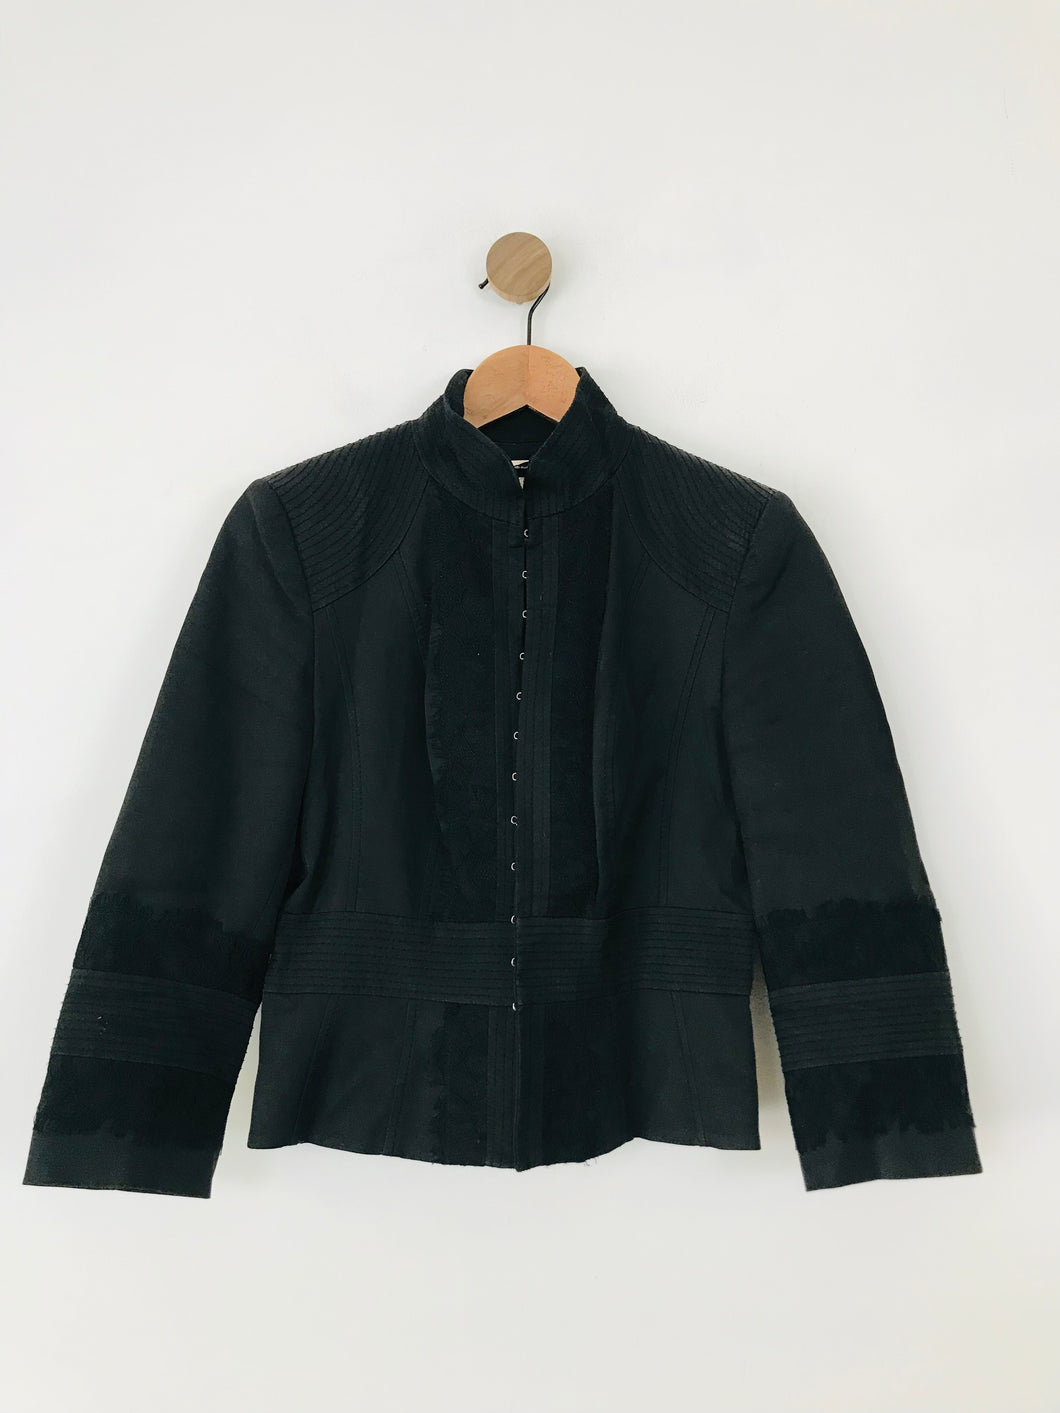 Karen Millen Women's Lace Panel Blazer Jacket | UK12 | Black